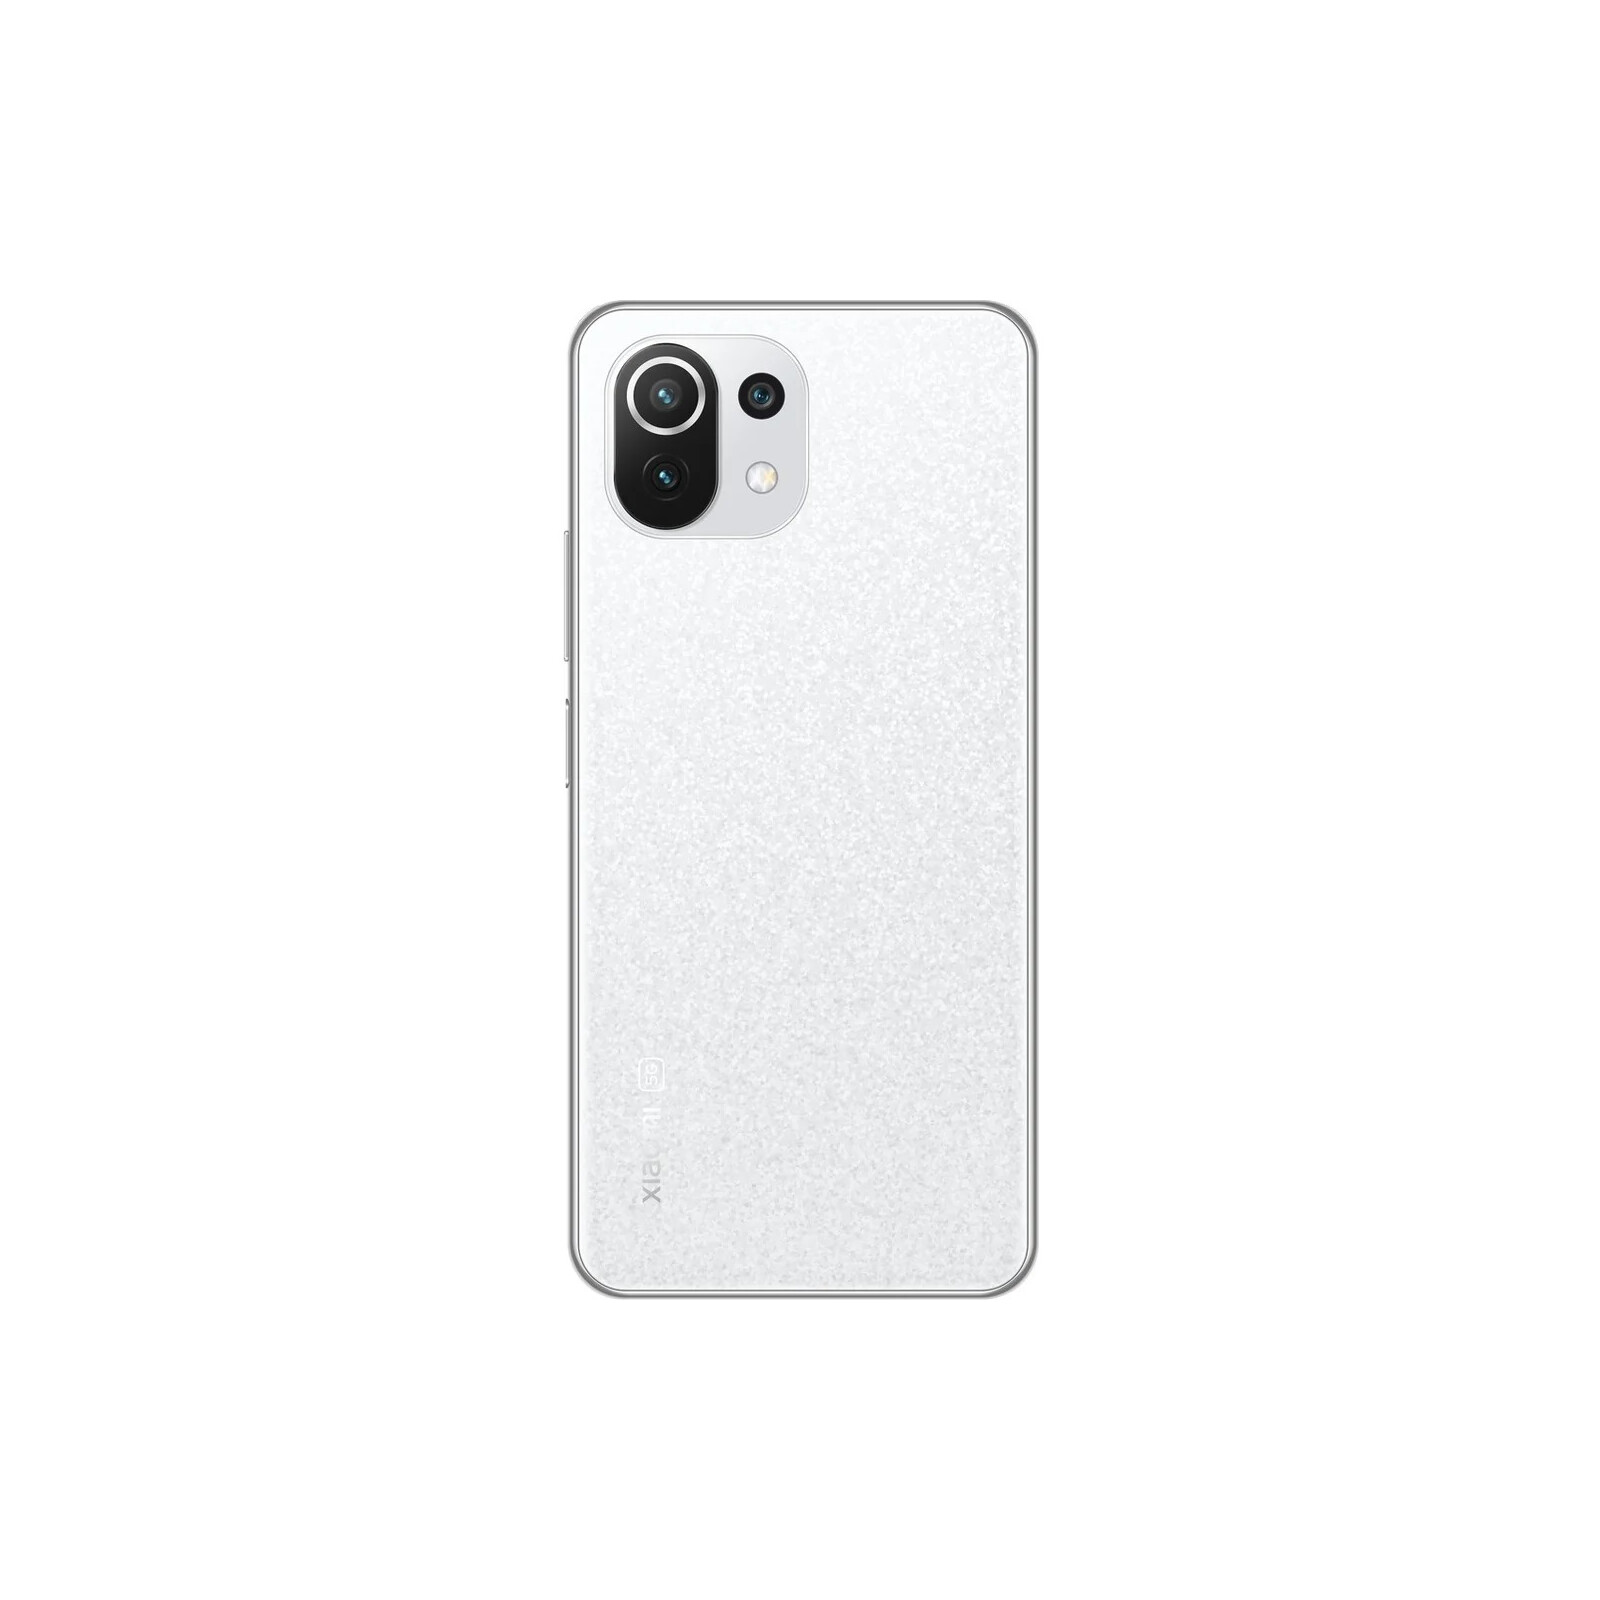 Xiaomi MI 11 lite 5G 128GB white